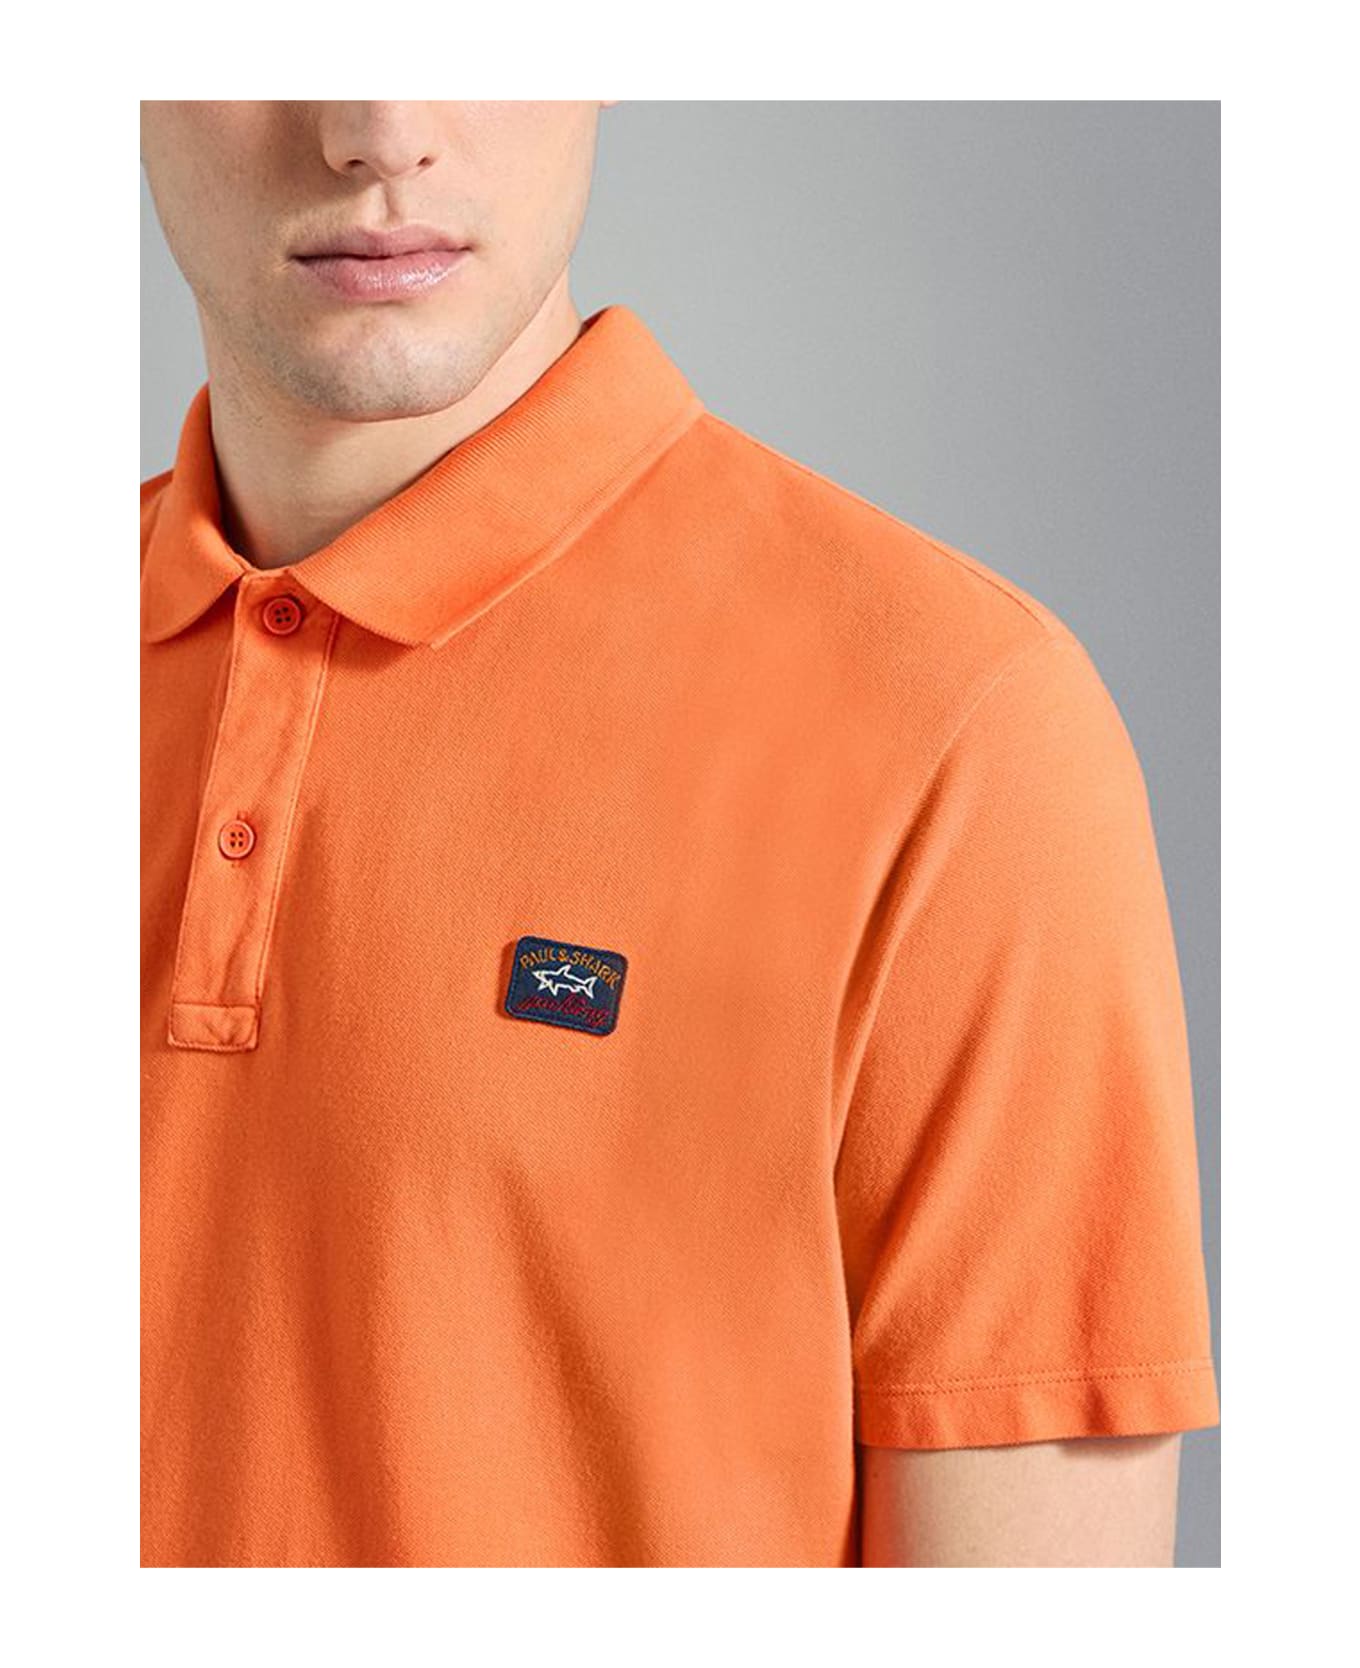 Paul&Shark Garment Dyed Pique' Cotton Polo - Arancio